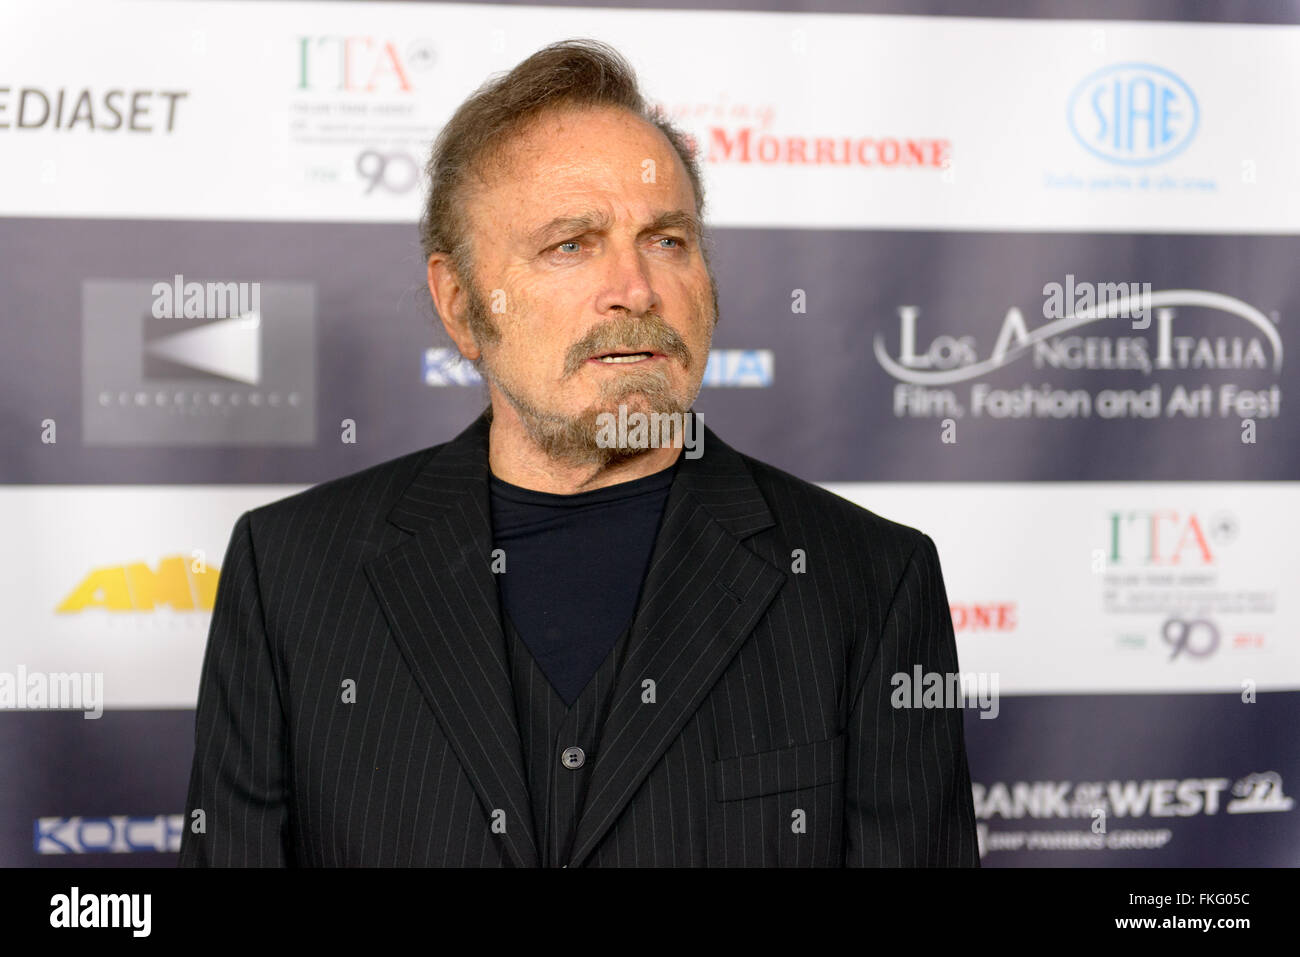 Febrero 22, 2016: El actor Franco Nero en el Festival de Cine Italiano de Los Ángeles. Foto de stock